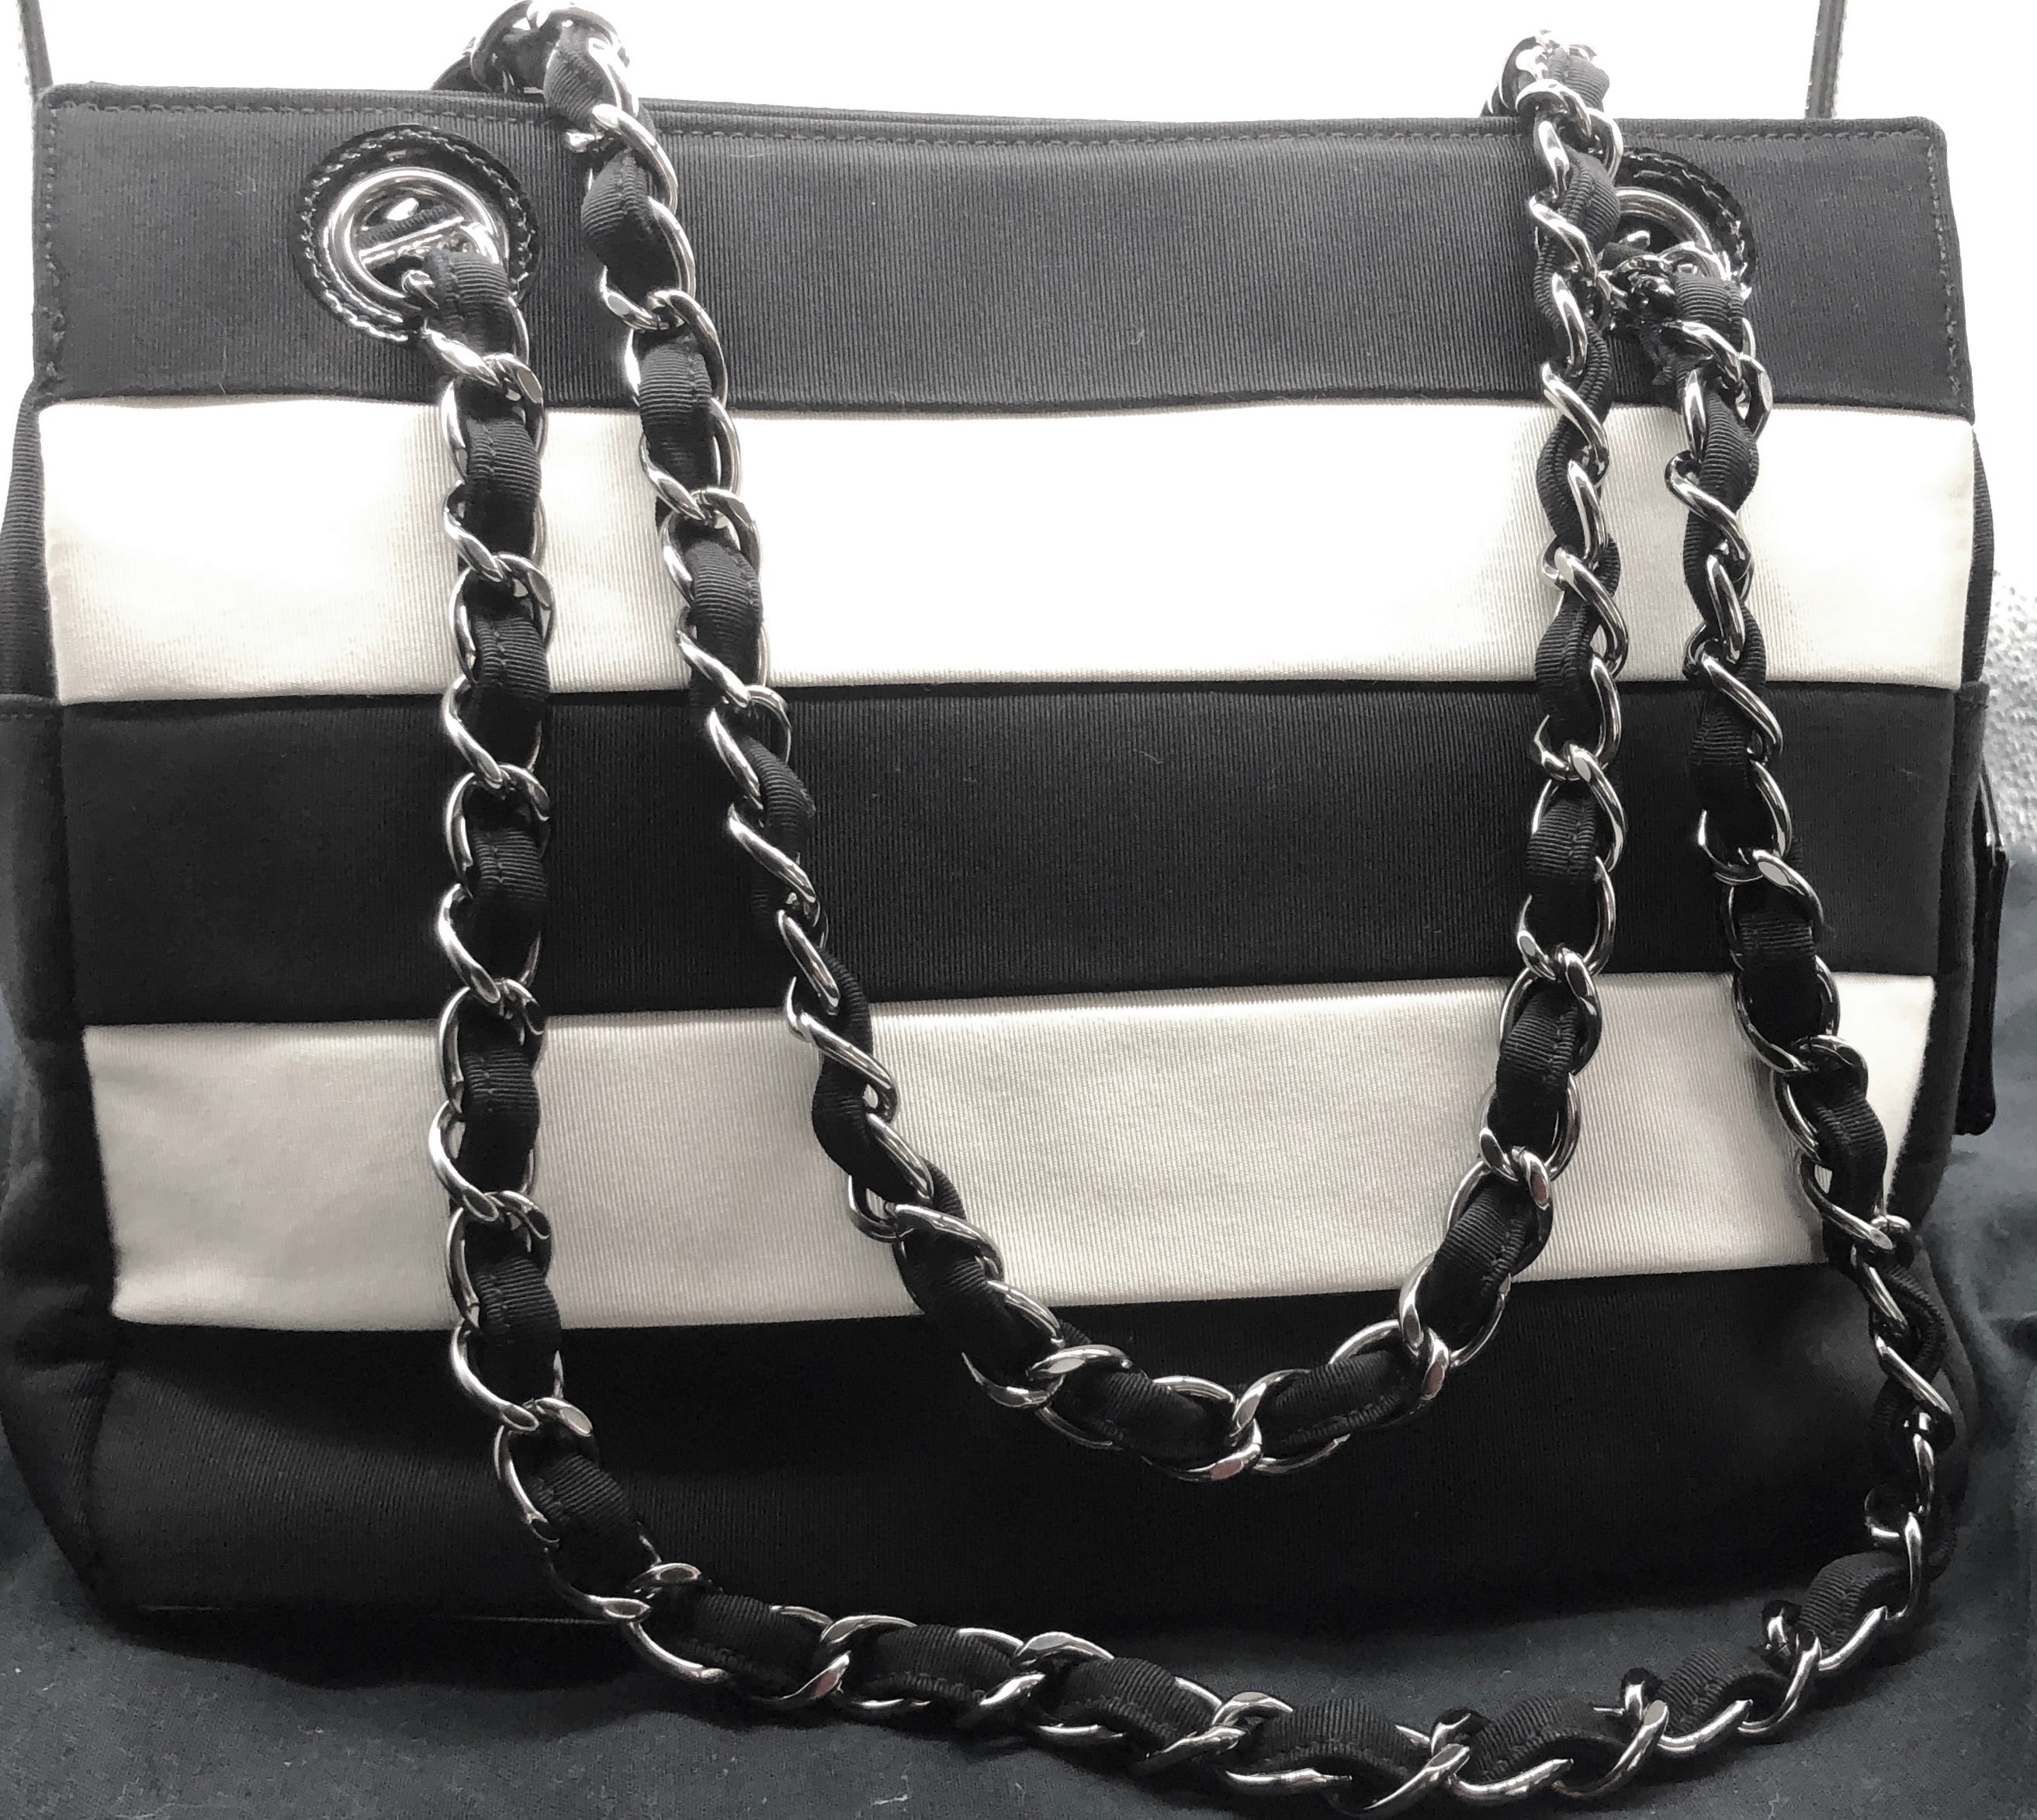 CHANEL Classic Handbag Black & White - A01112B05821ND001 